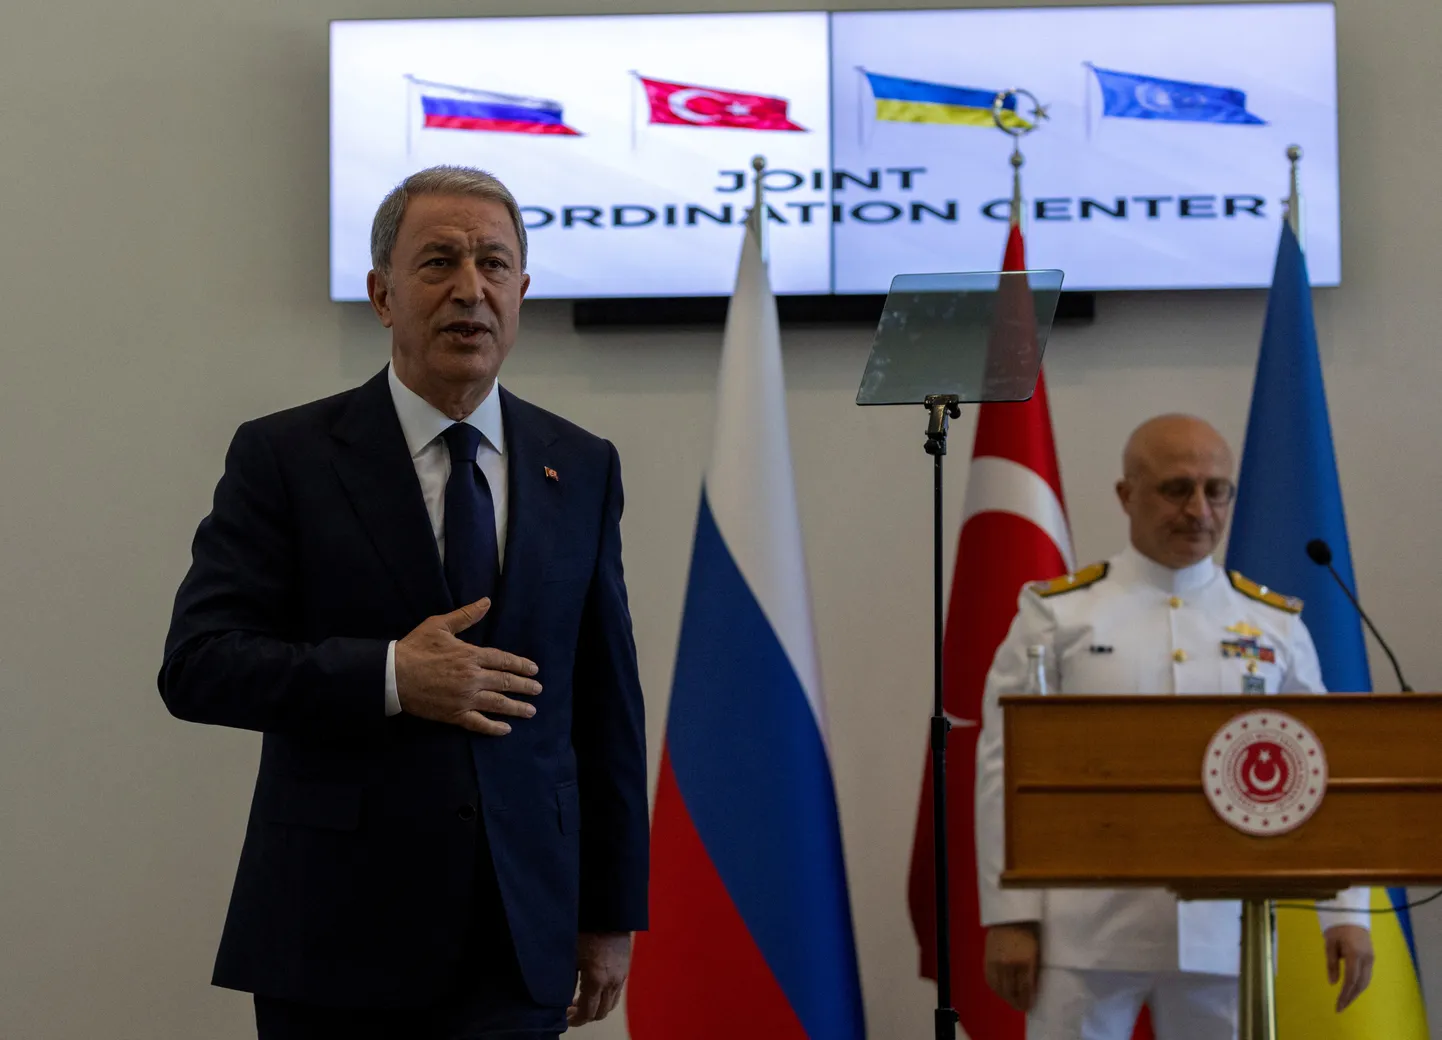 Türgi kaitseminister Hulusi Akar koordinatsioonikeskuse avamisel.